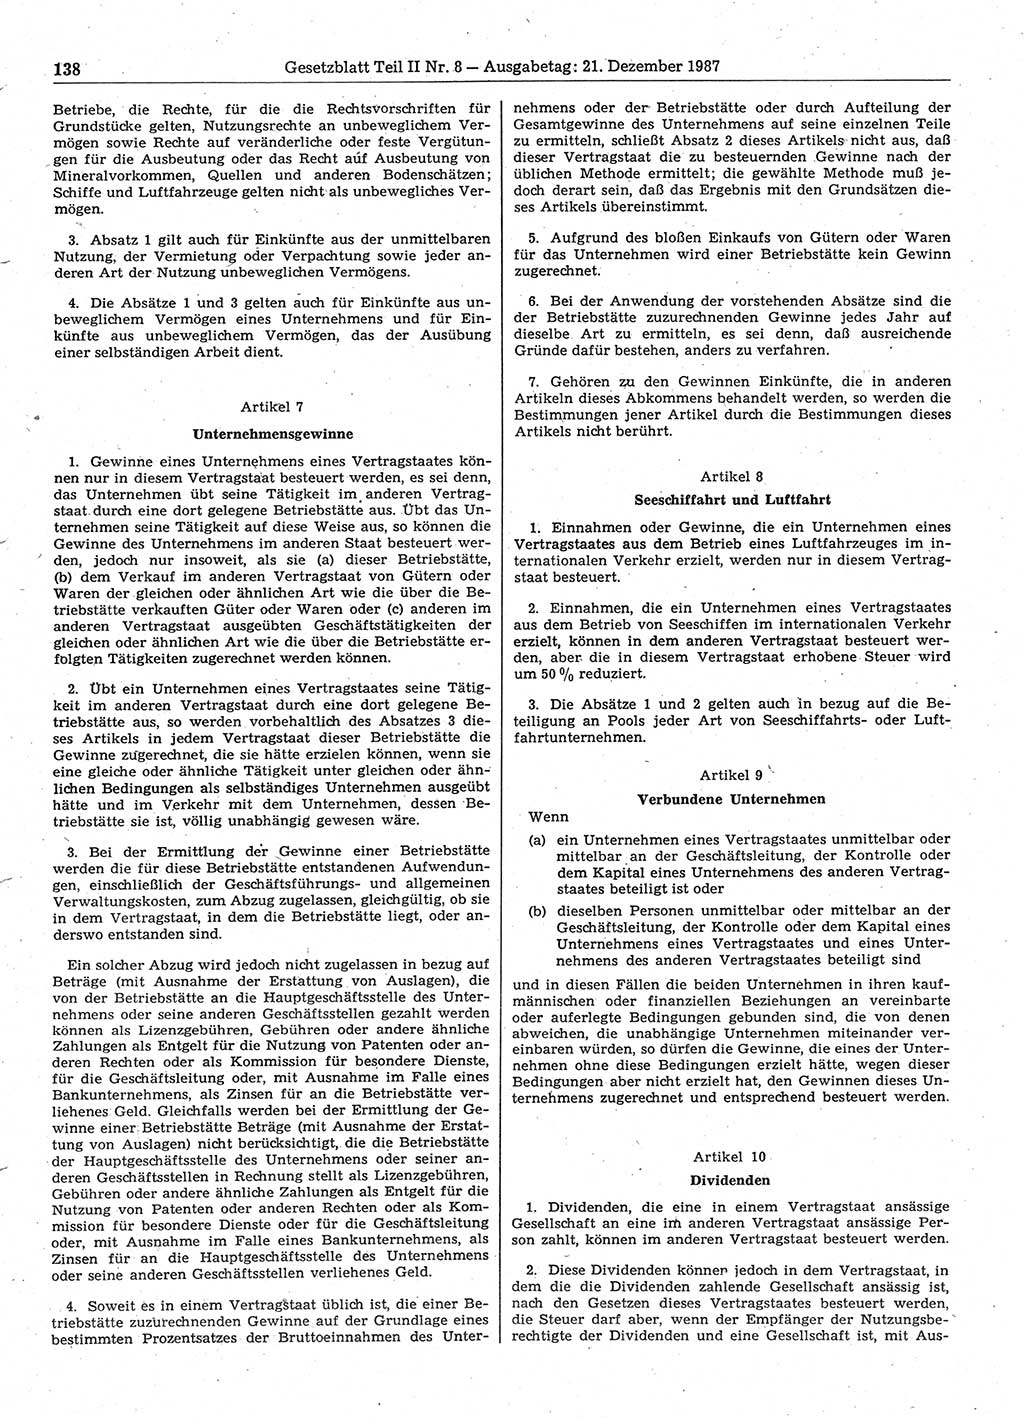 Gesetzblatt (GBl.) der Deutschen Demokratischen Republik (DDR) Teil ⅠⅠ 1987, Seite 138 (GBl. DDR ⅠⅠ 1987, S. 138)